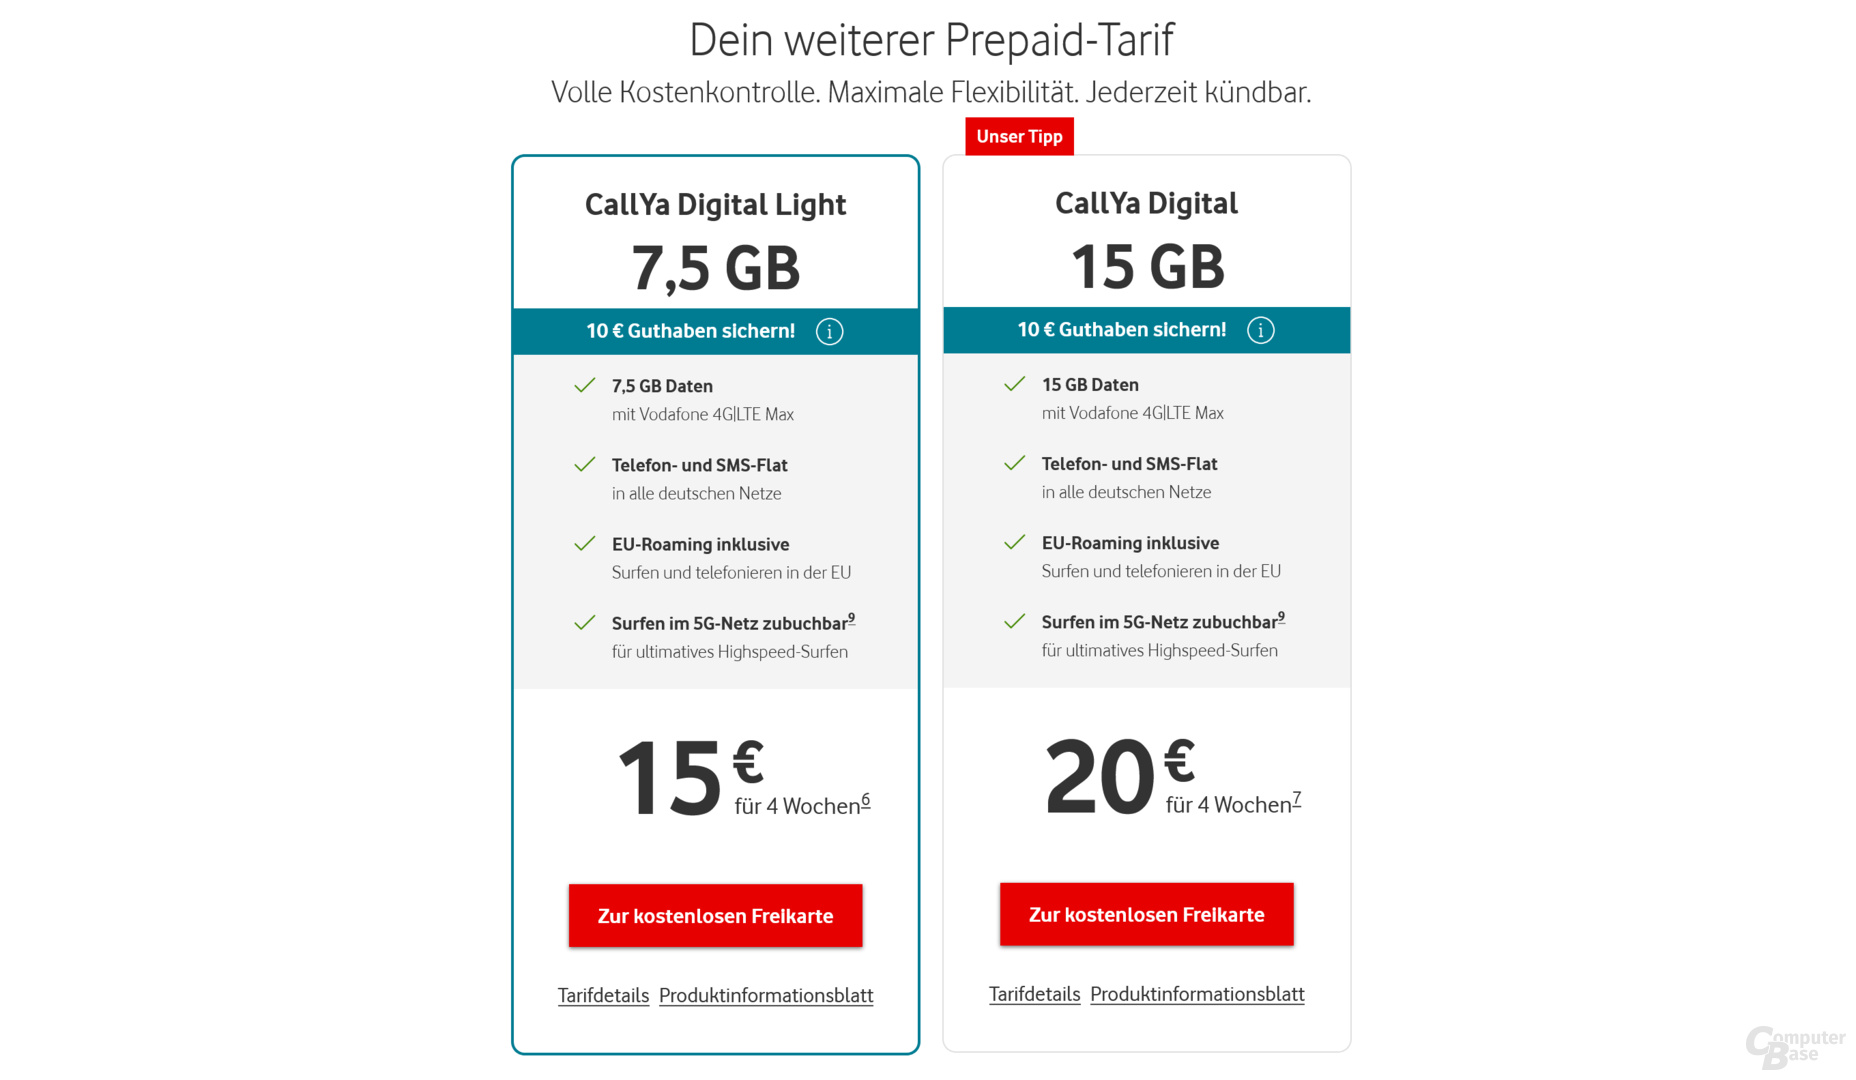 Mit CallYa Digital (15 GB) und CallYa Digital Light (7,5 GB) bietet Vodafone zwei digital Prepaid-Tarife